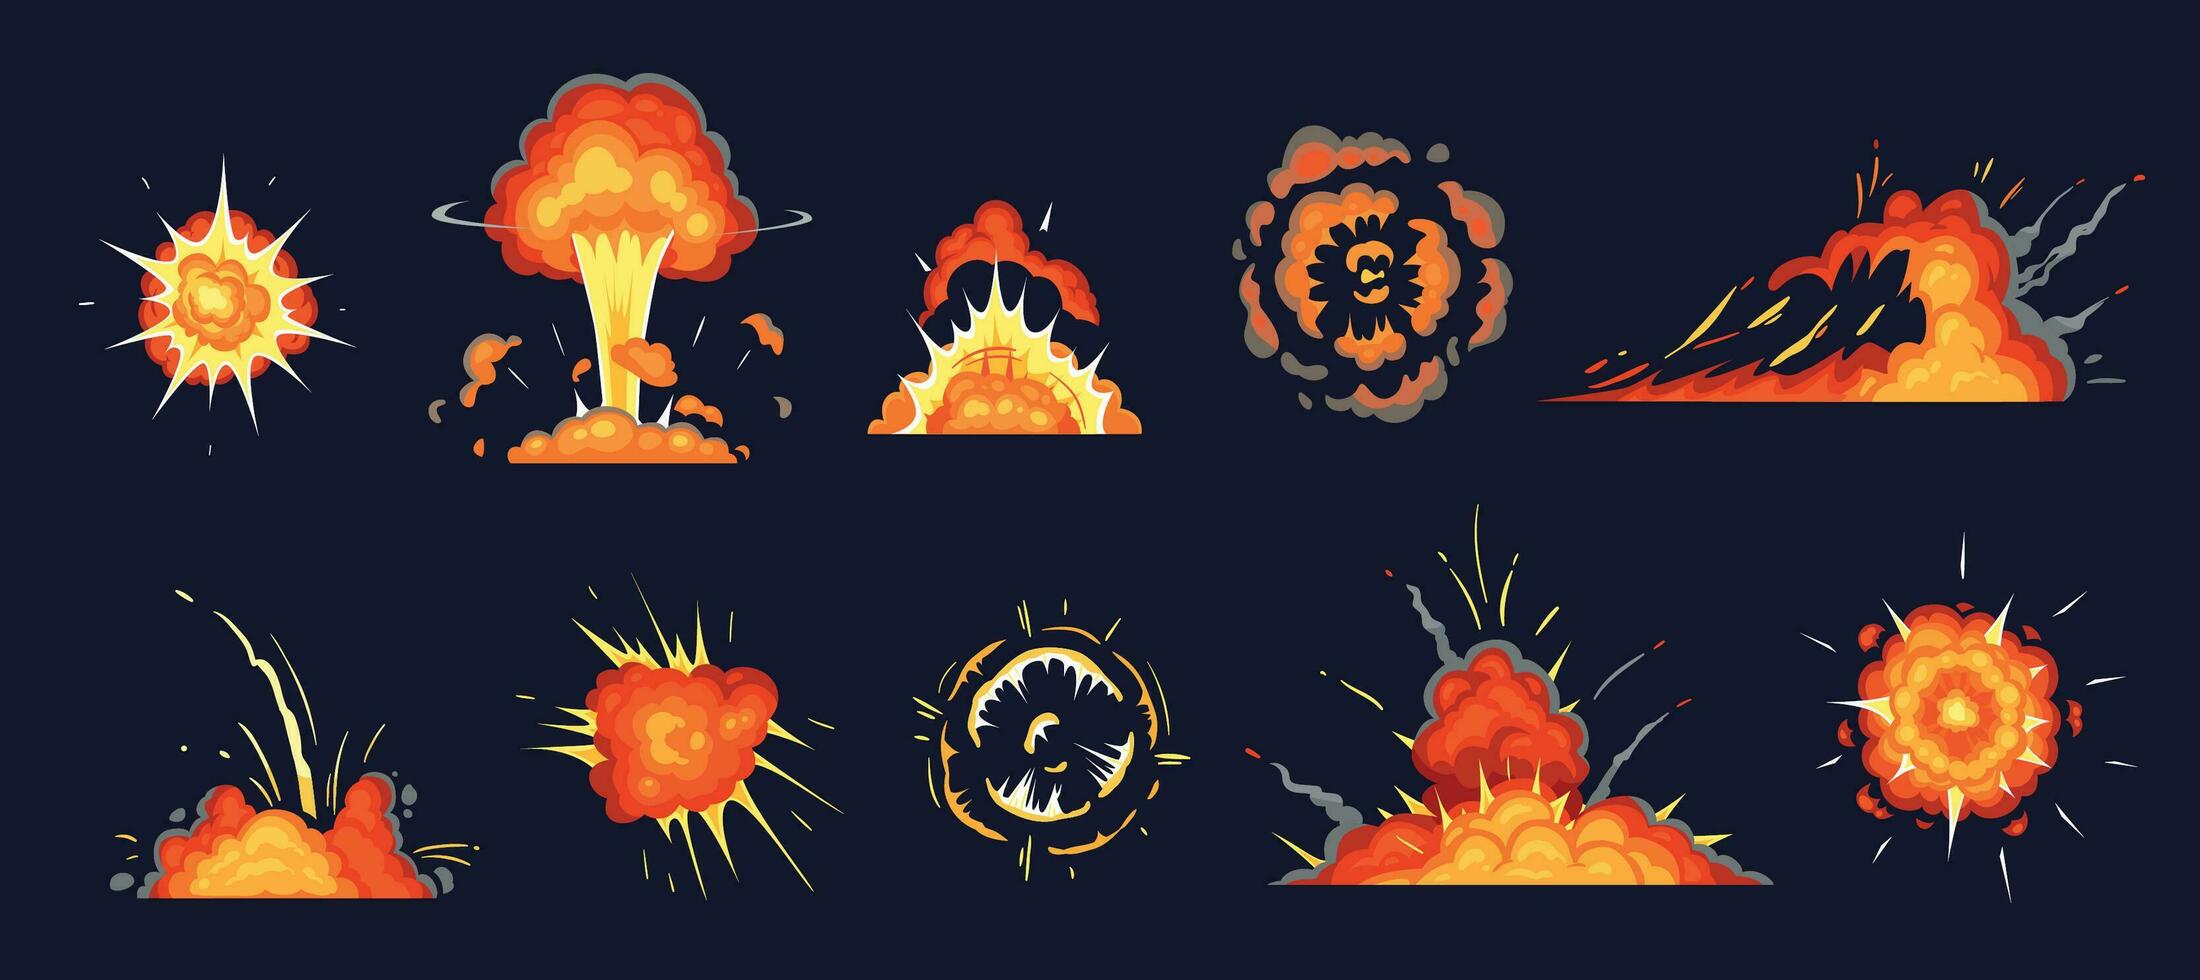 desenho animado explosão. explodindo bombear, atômico explodir efeito e quadrinho explosões fumaça nuvens vetor ilustração conjunto